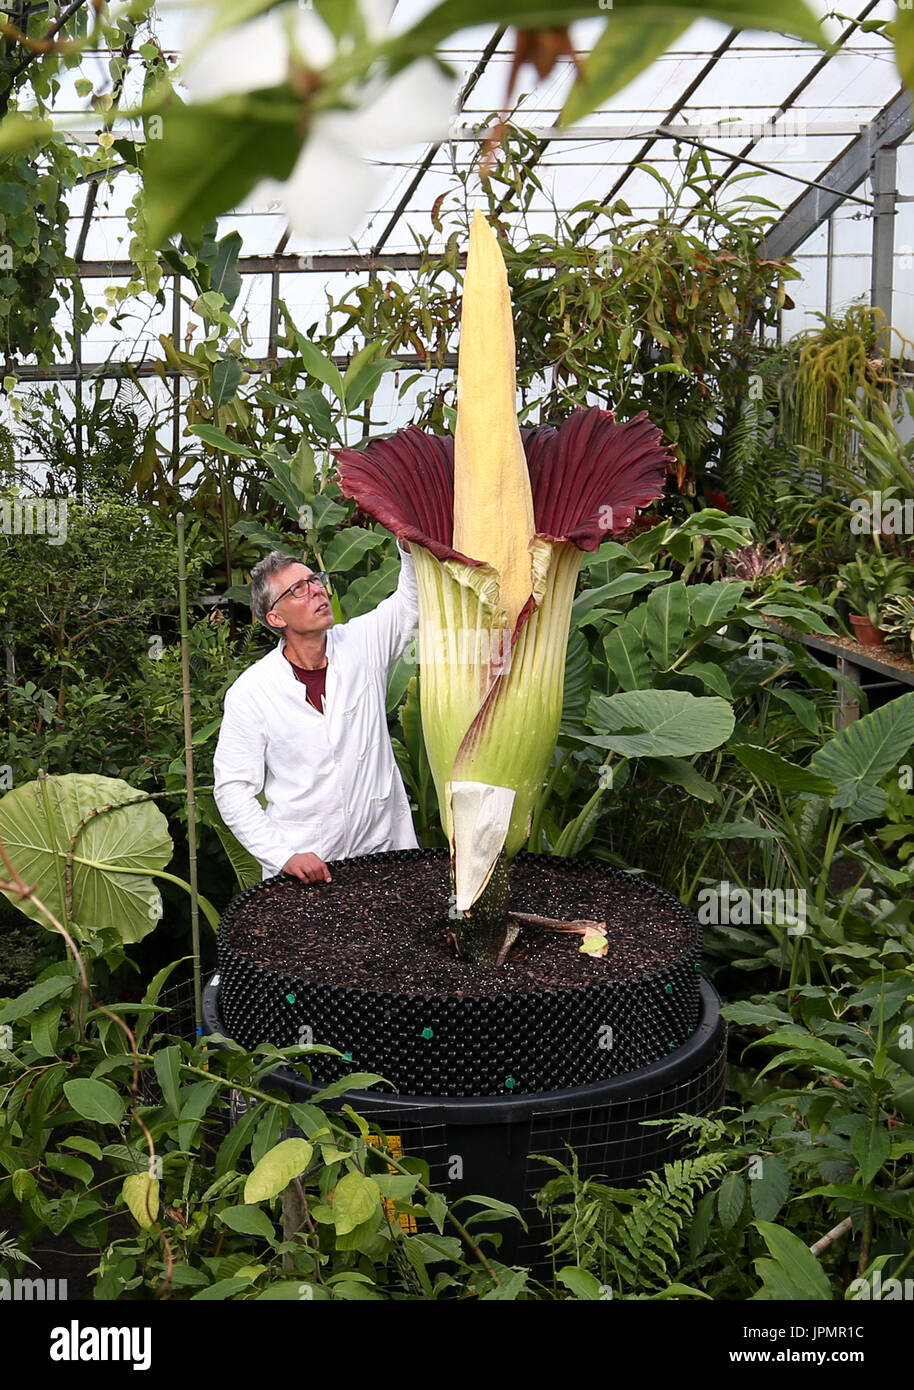 Associé de recherche Dr Axel Dalberg Poulsen examine un Amorphophallus titanum, ou titan arum, l'un des plus gros et smelliest fleurs, qui a fleuri au Royal Botanic Garden d'Edimbourg. Banque D'Images